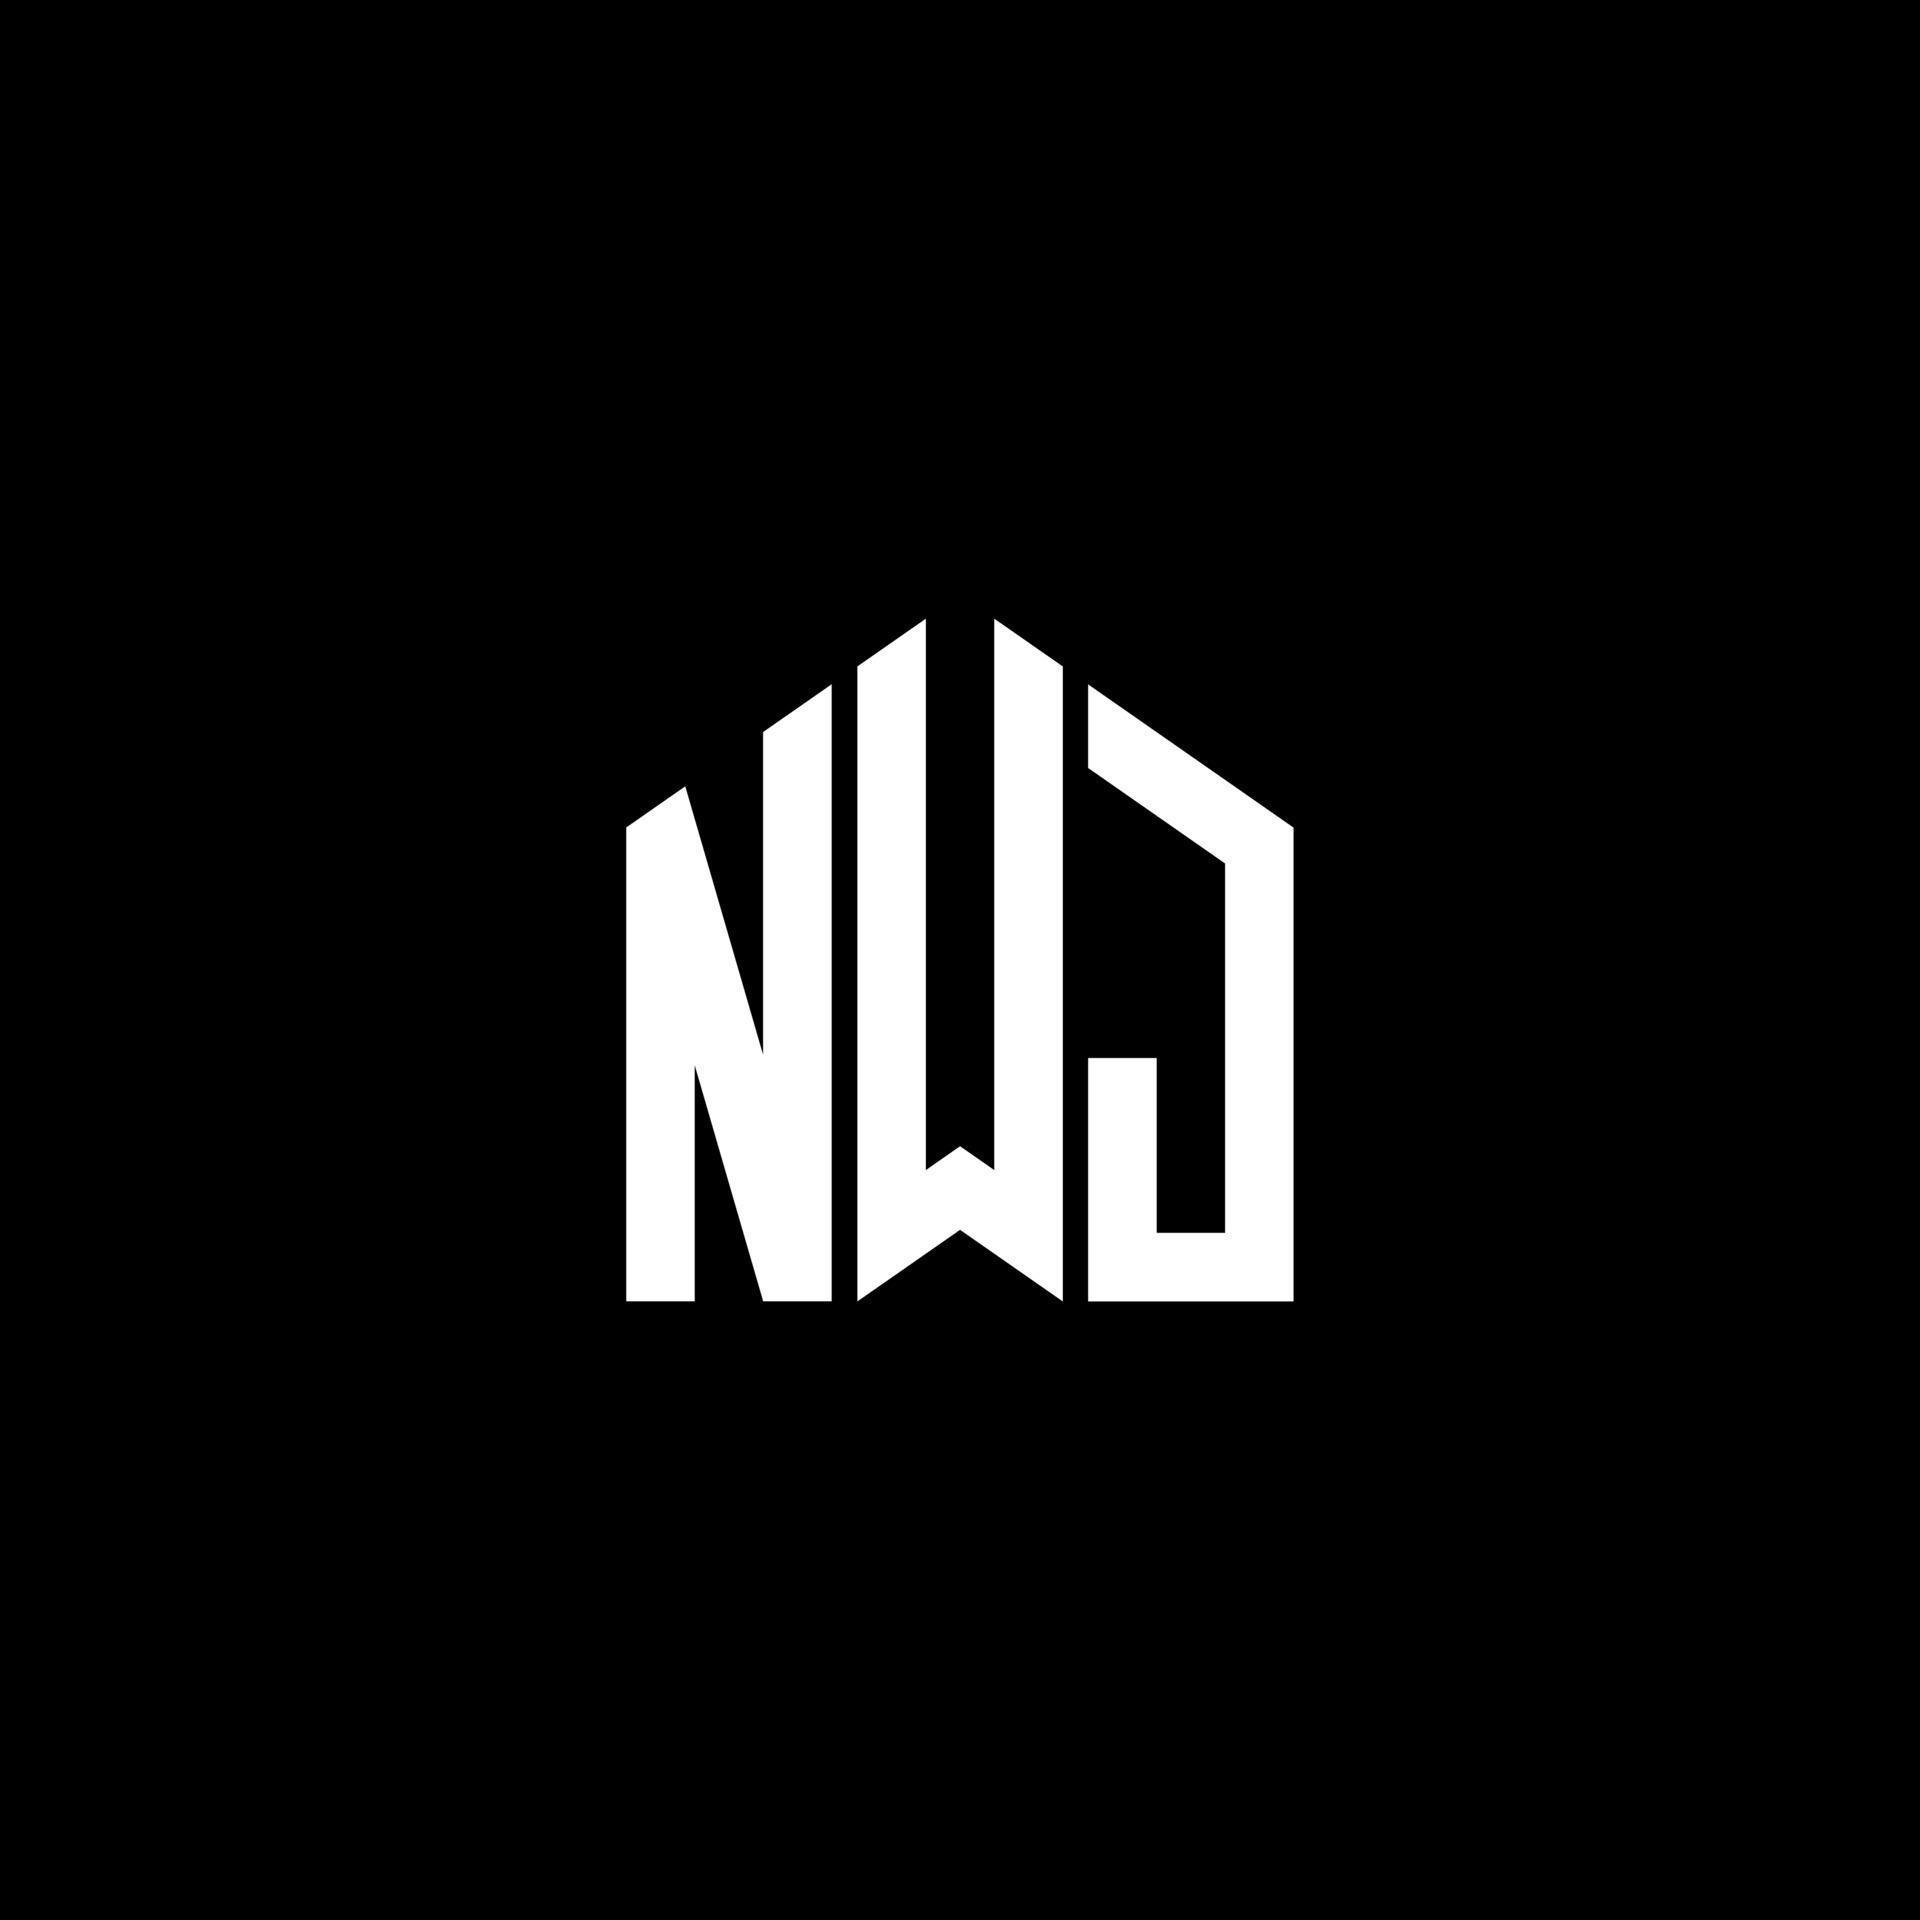 NWJ letter logo design on BLACK background. NWJ creative initials ...